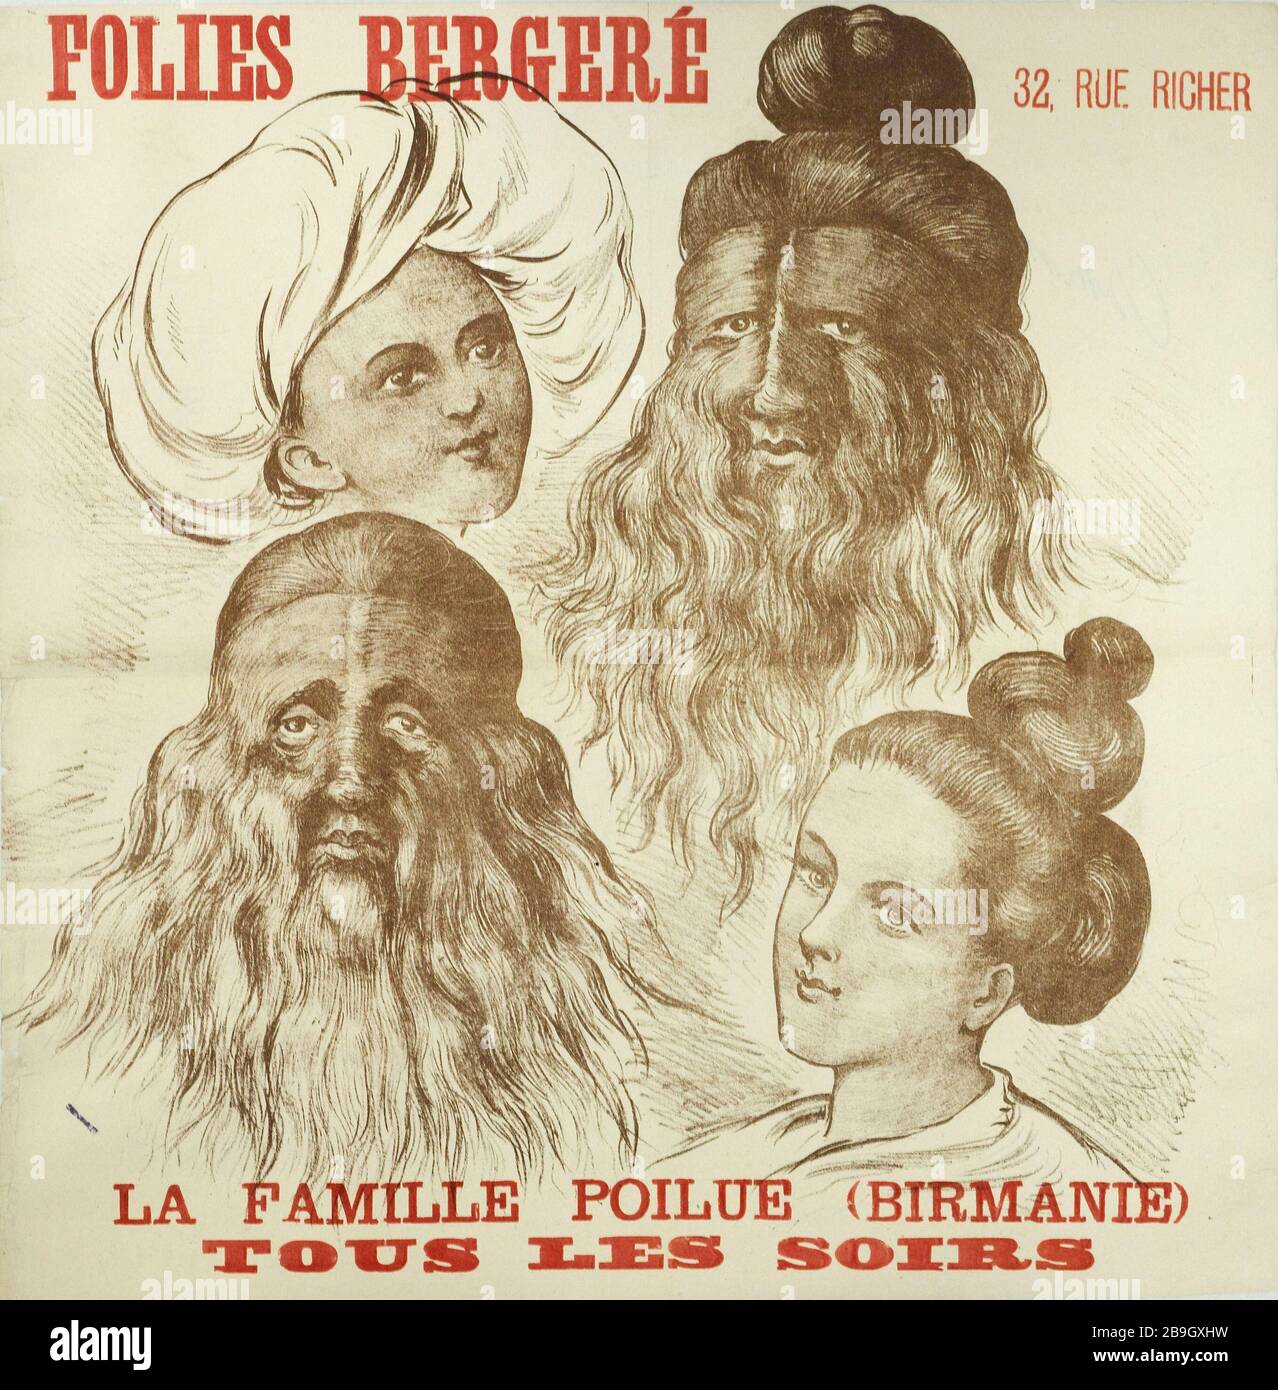 Folies-Bergere, FAMILIE HAIRY (BIRMA) Folies-Bergère, La Famille Poilue (Birmanie). Affiche. Lithographie couleur. Paris, musée Carnavalet. Stockfoto